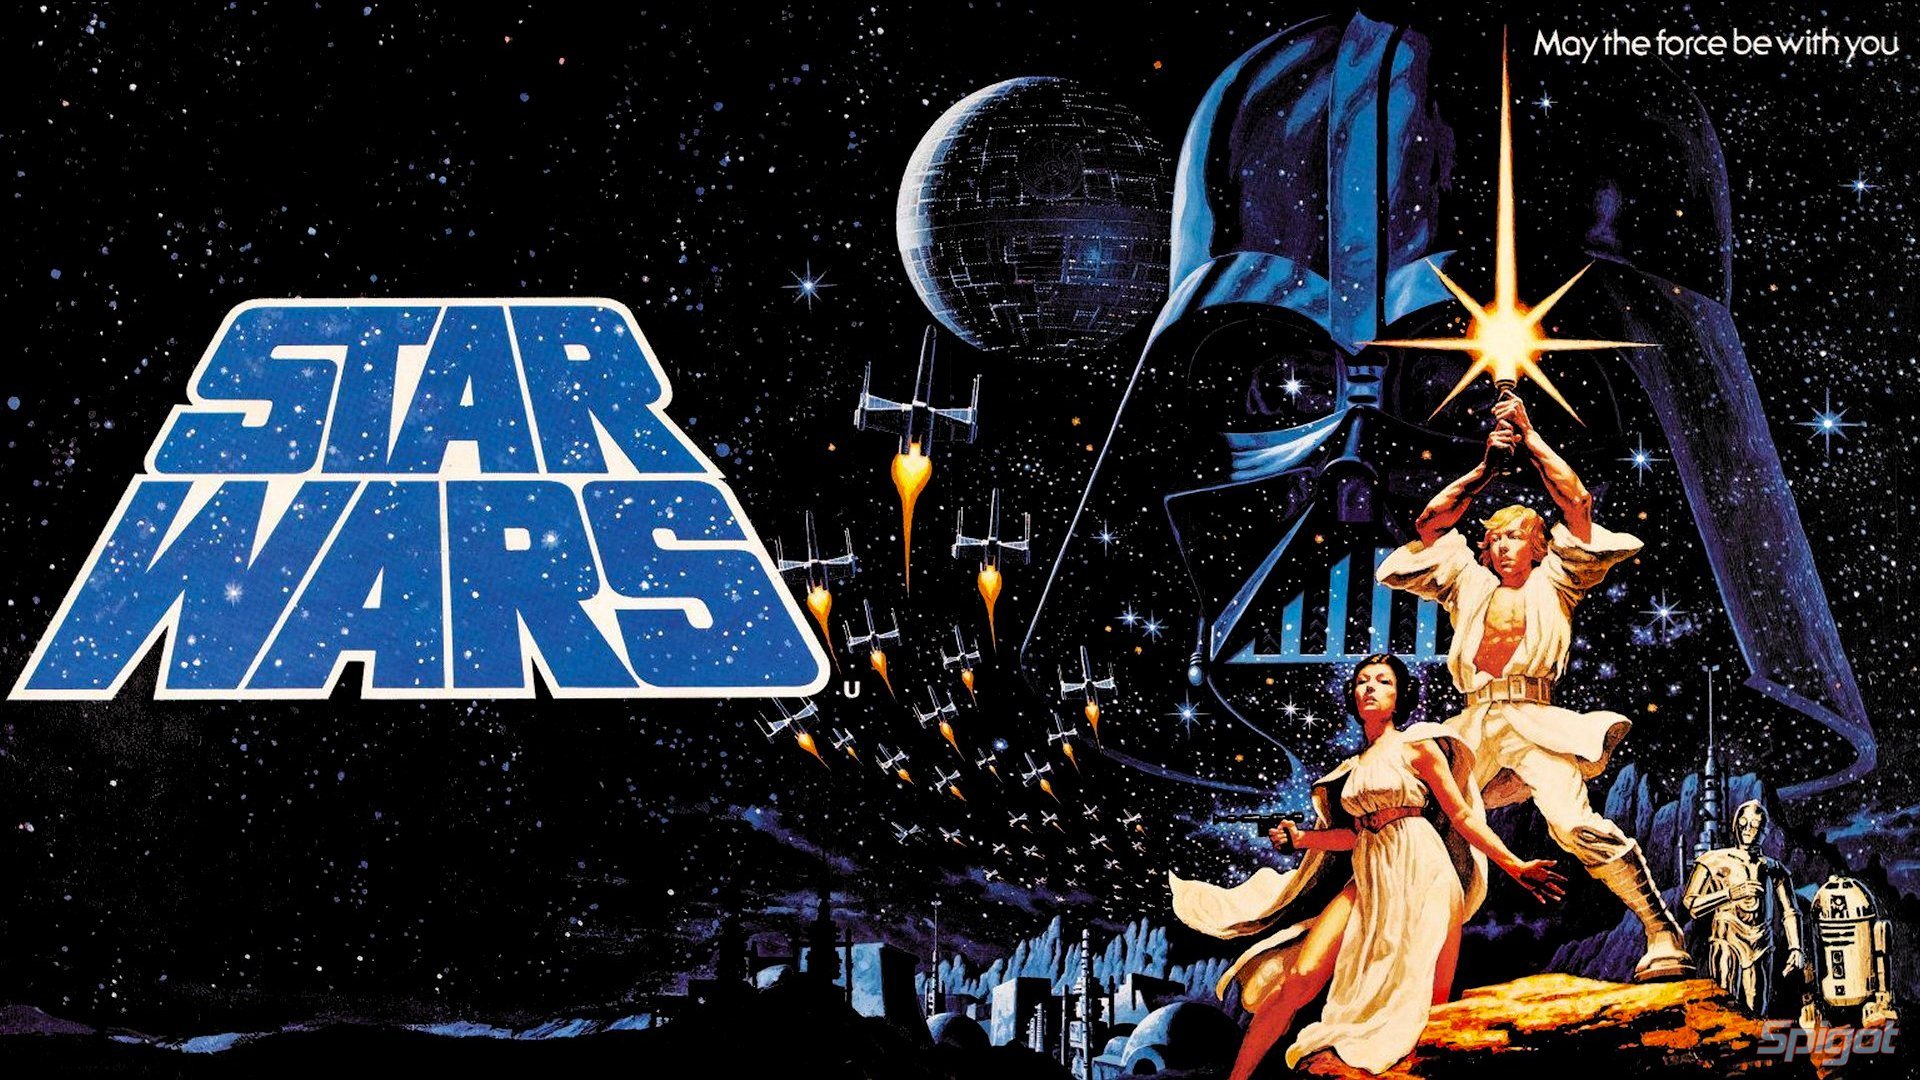 Star Wars: la storia ed il futuro del franchise nel medium videoludico parte 1 - Immagine in evidenza